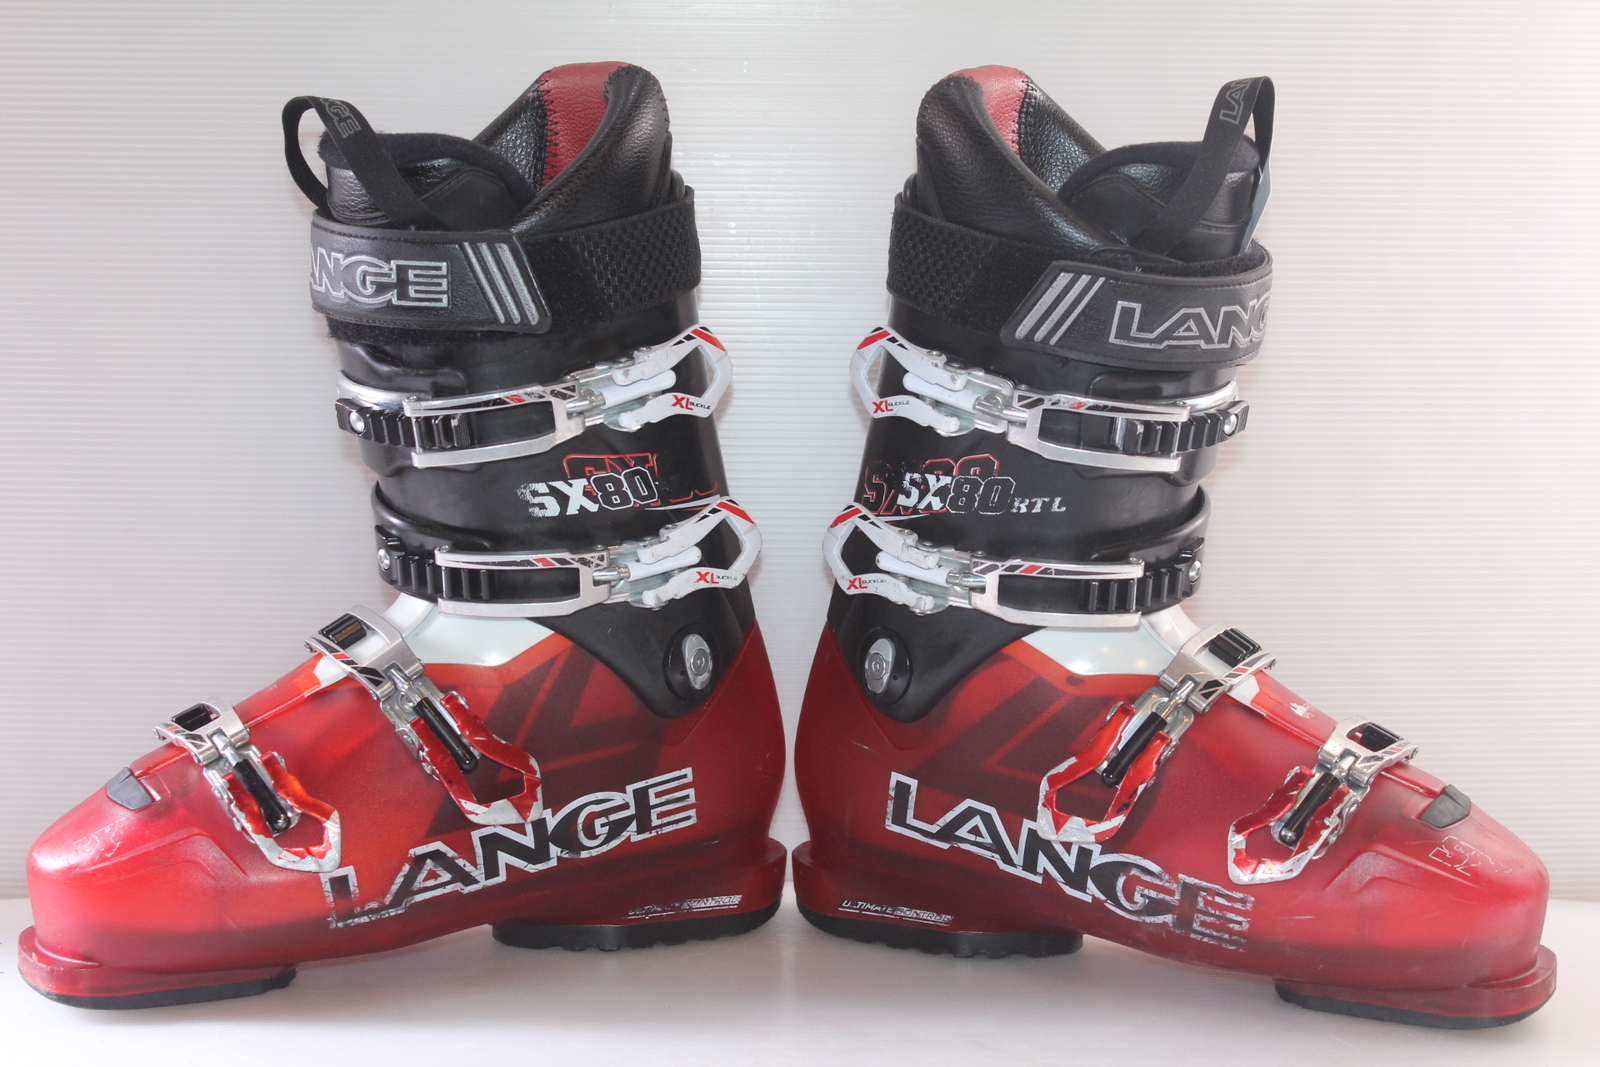 Lyžařské boty Lange SX 80 RTL vel. EU41 flexe 80